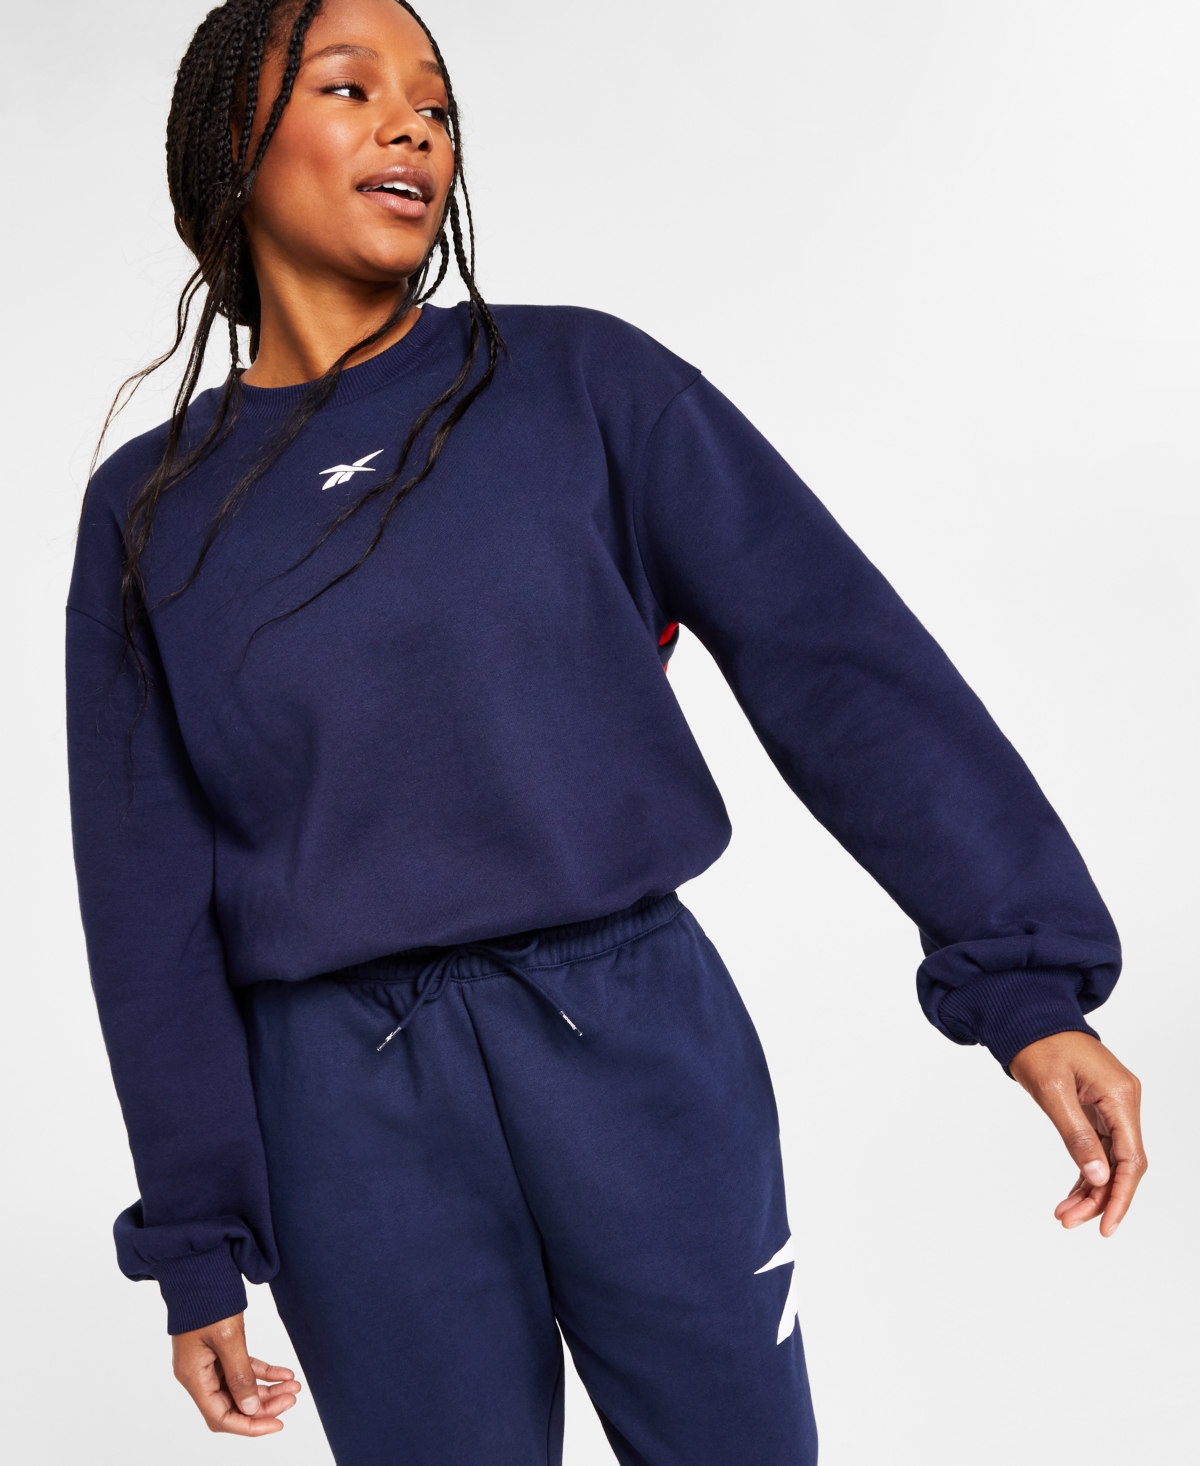 Reebok Women's Back Vector Fleece Sweatshirt, A Macy's Exclusive In Vector Navy